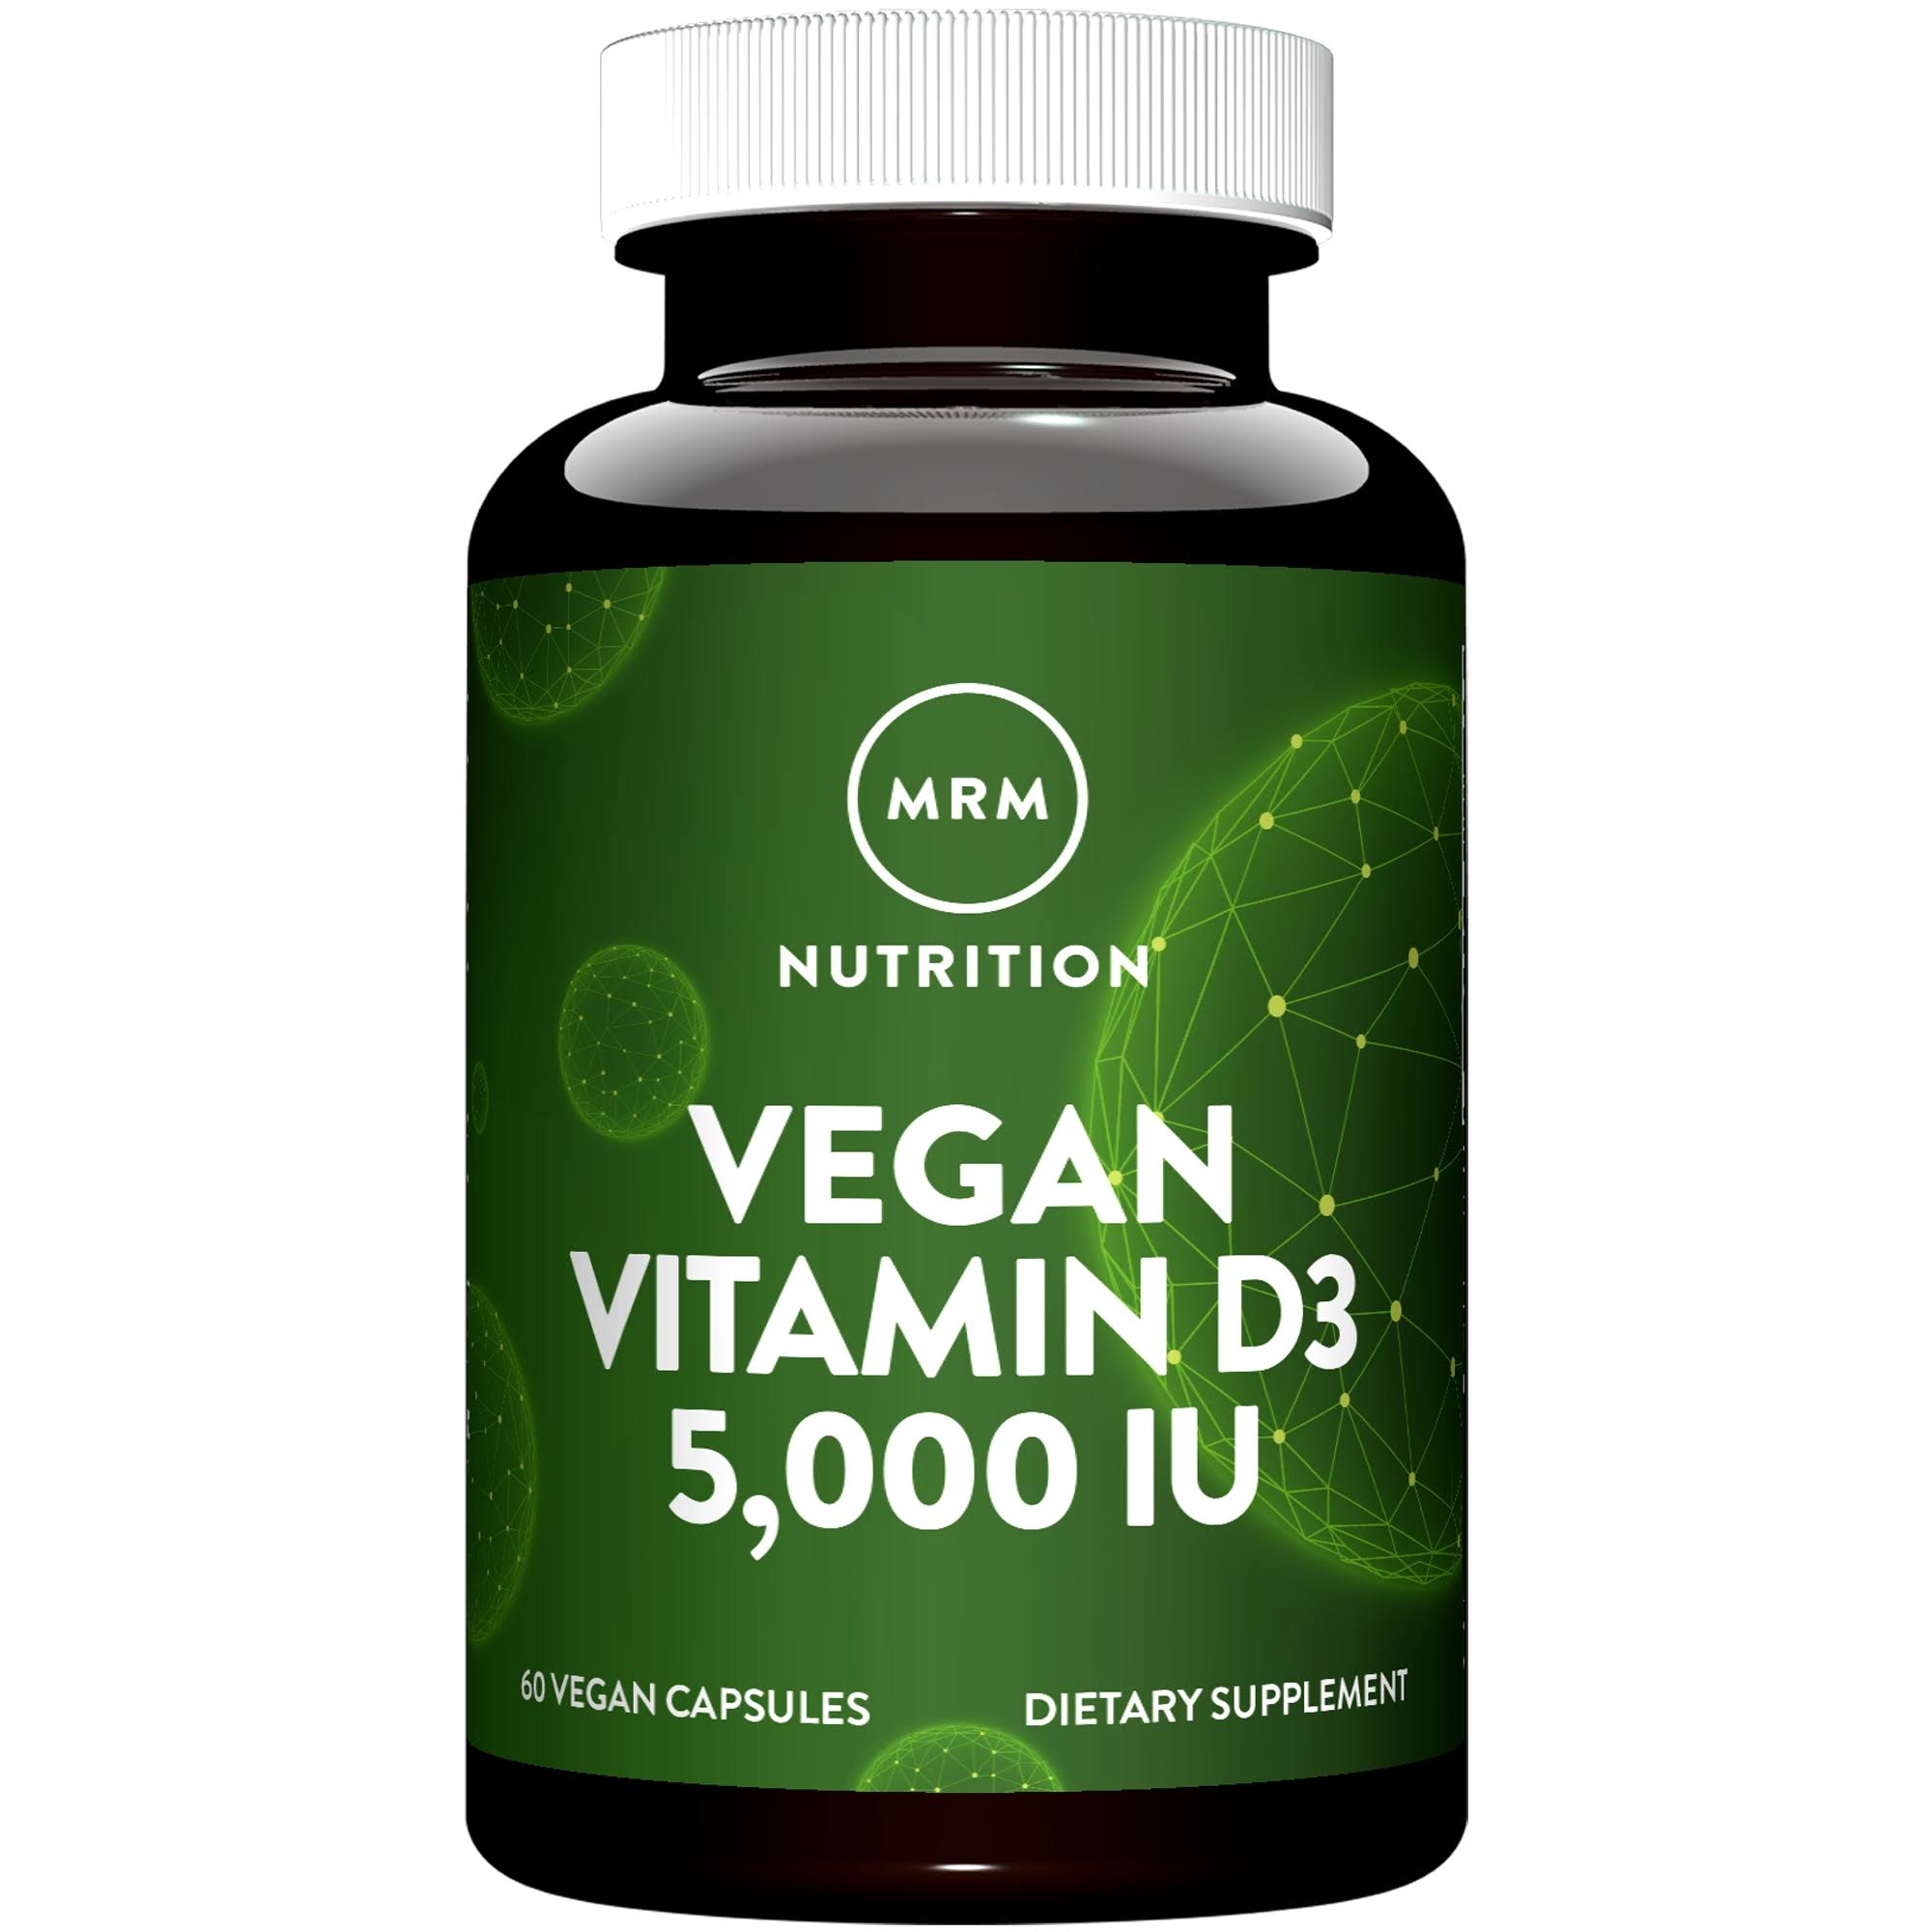 Mrm Vegan Vitamin D3 Supplement - 5000 IU, 60 Vegan Capsules